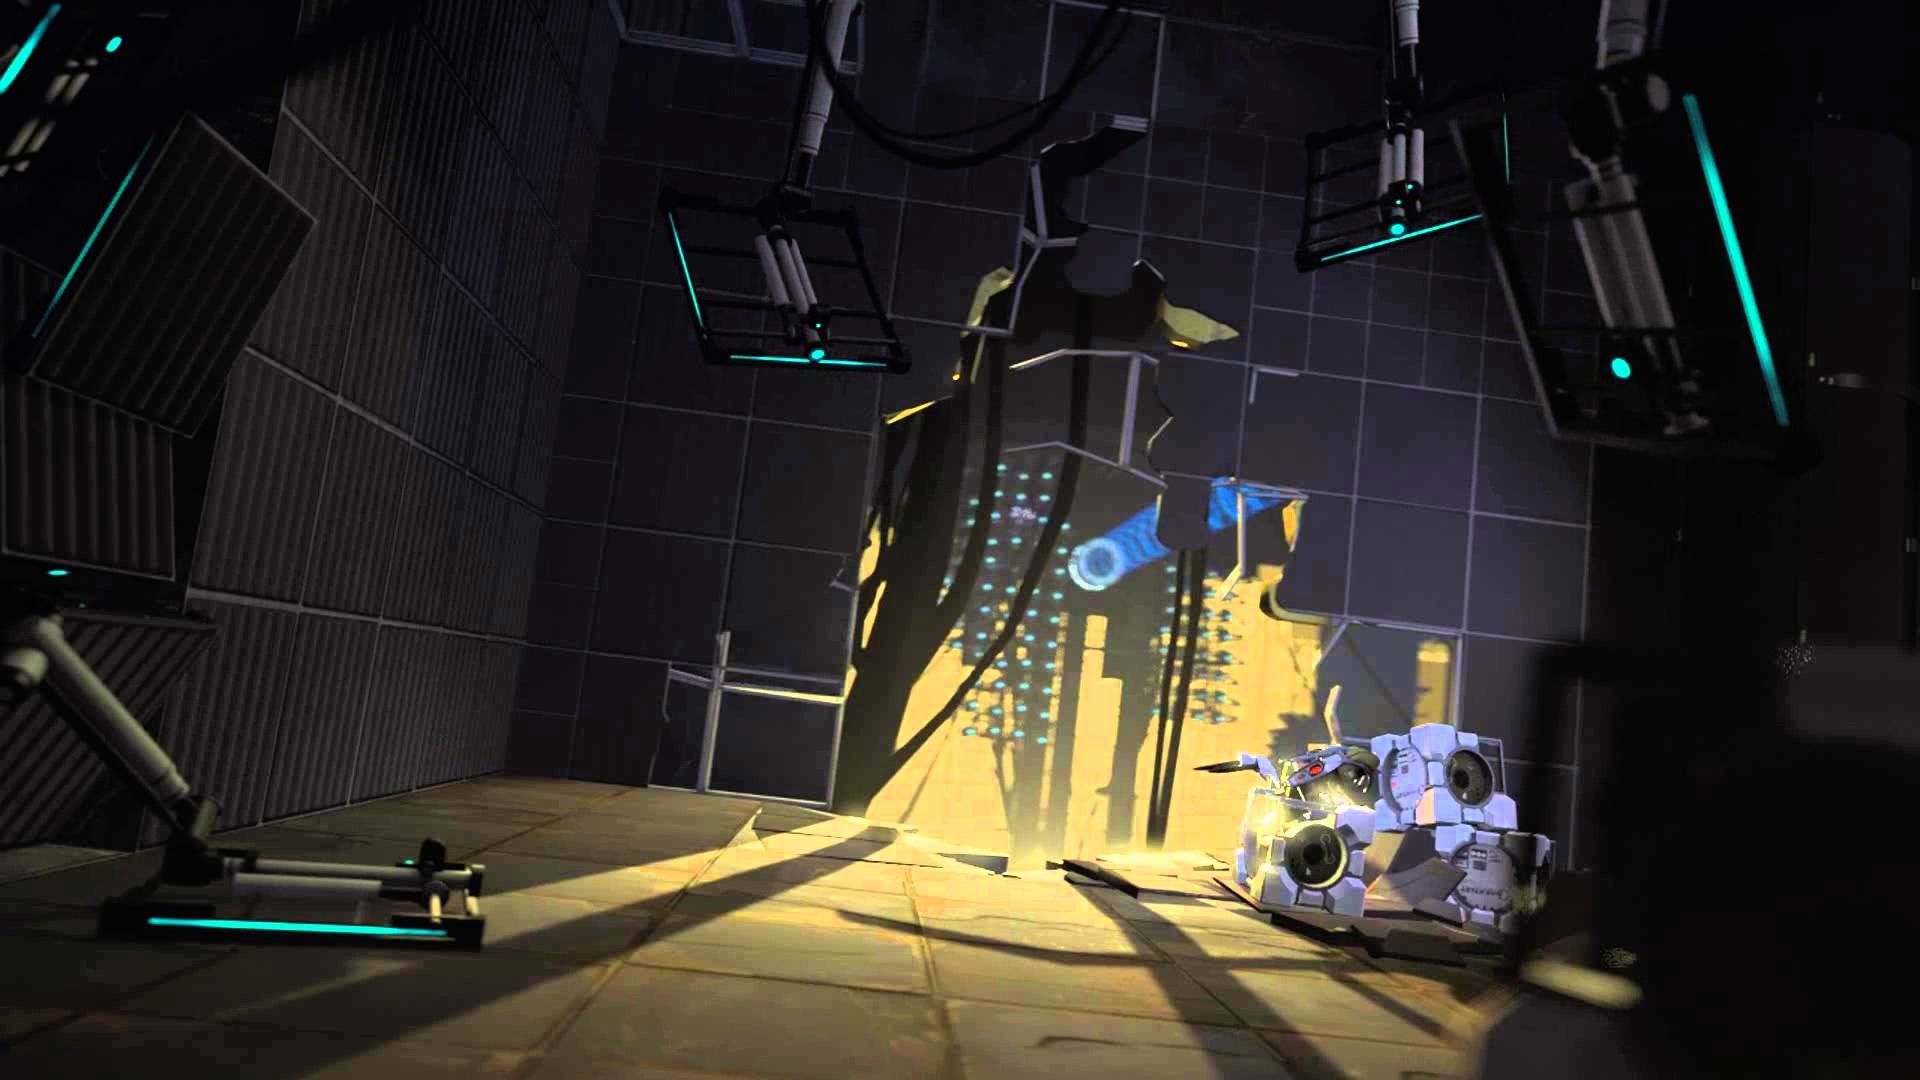 Hình nền Portal 2 làm cho màn hình desktop của bạn trở nên độc đáo và đầy tinh tế. Với hình ảnh rực rỡ của các nhân vật đáng yêu trong trò chơi, bạn sẽ đắm mình trong không gian thần thoại của Portal